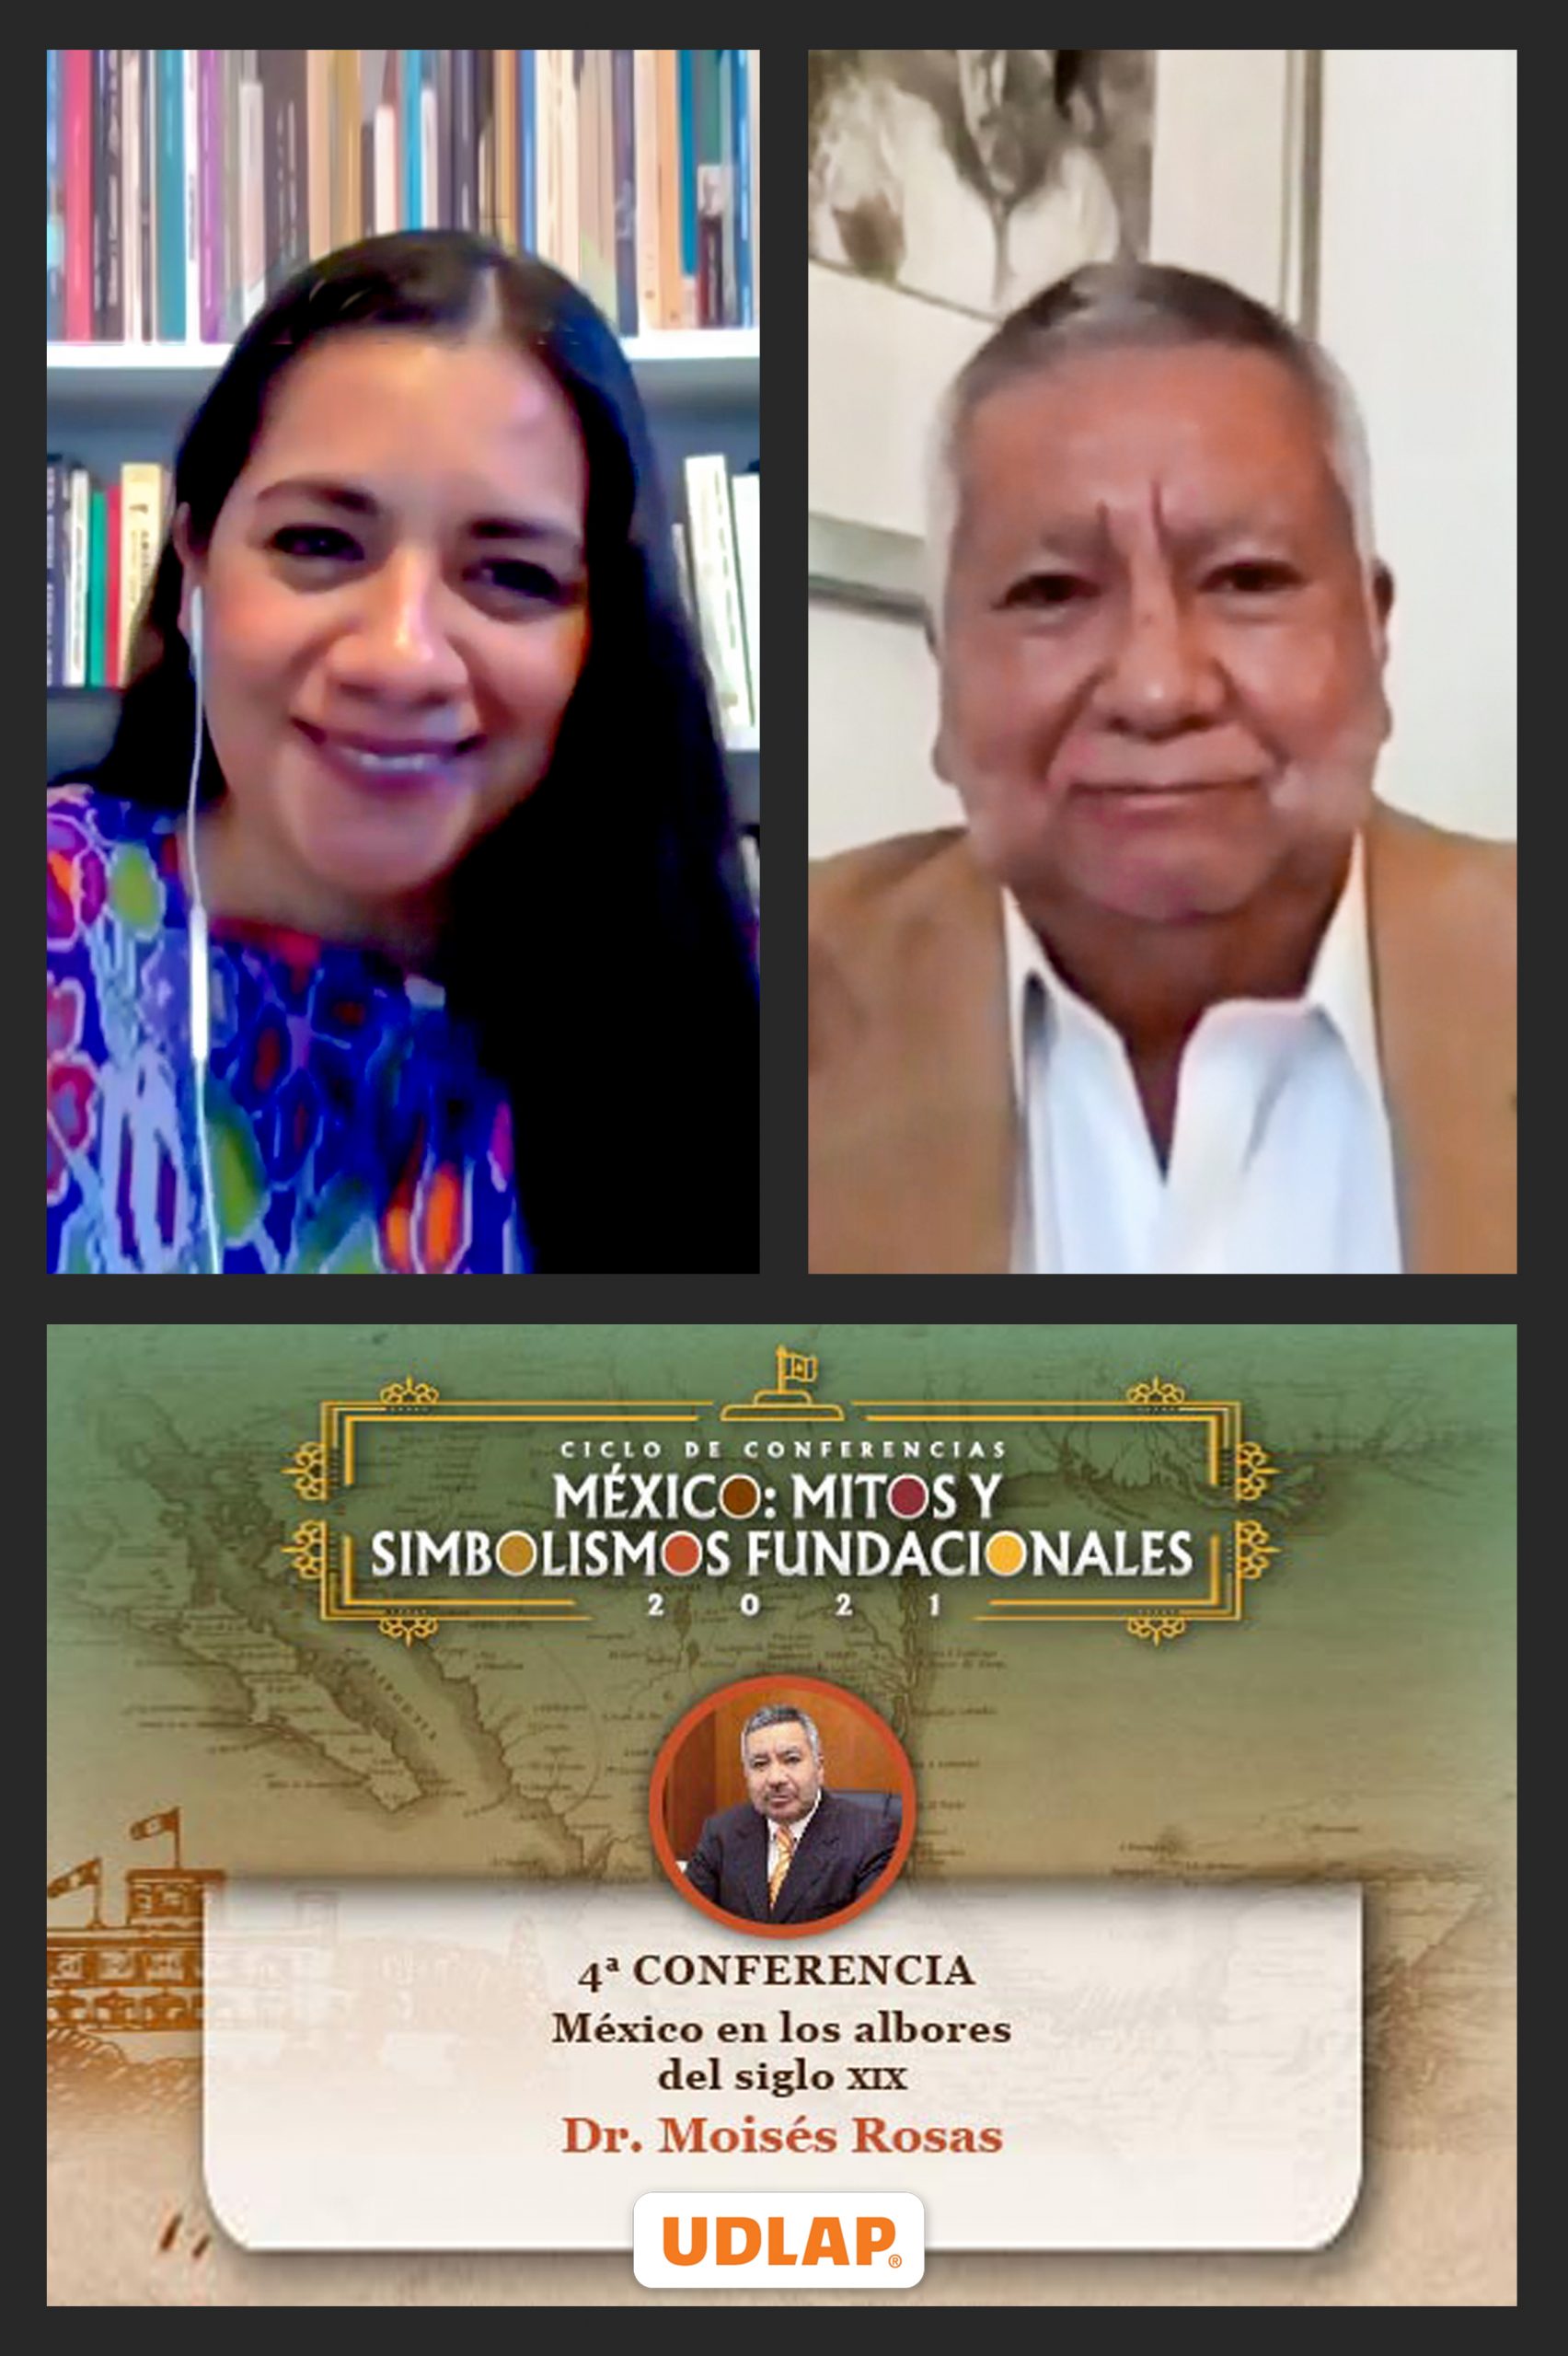 Concluye el ciclo de conferencias México: Mitos y simbolismos fundacionales organizado por la UDLAP